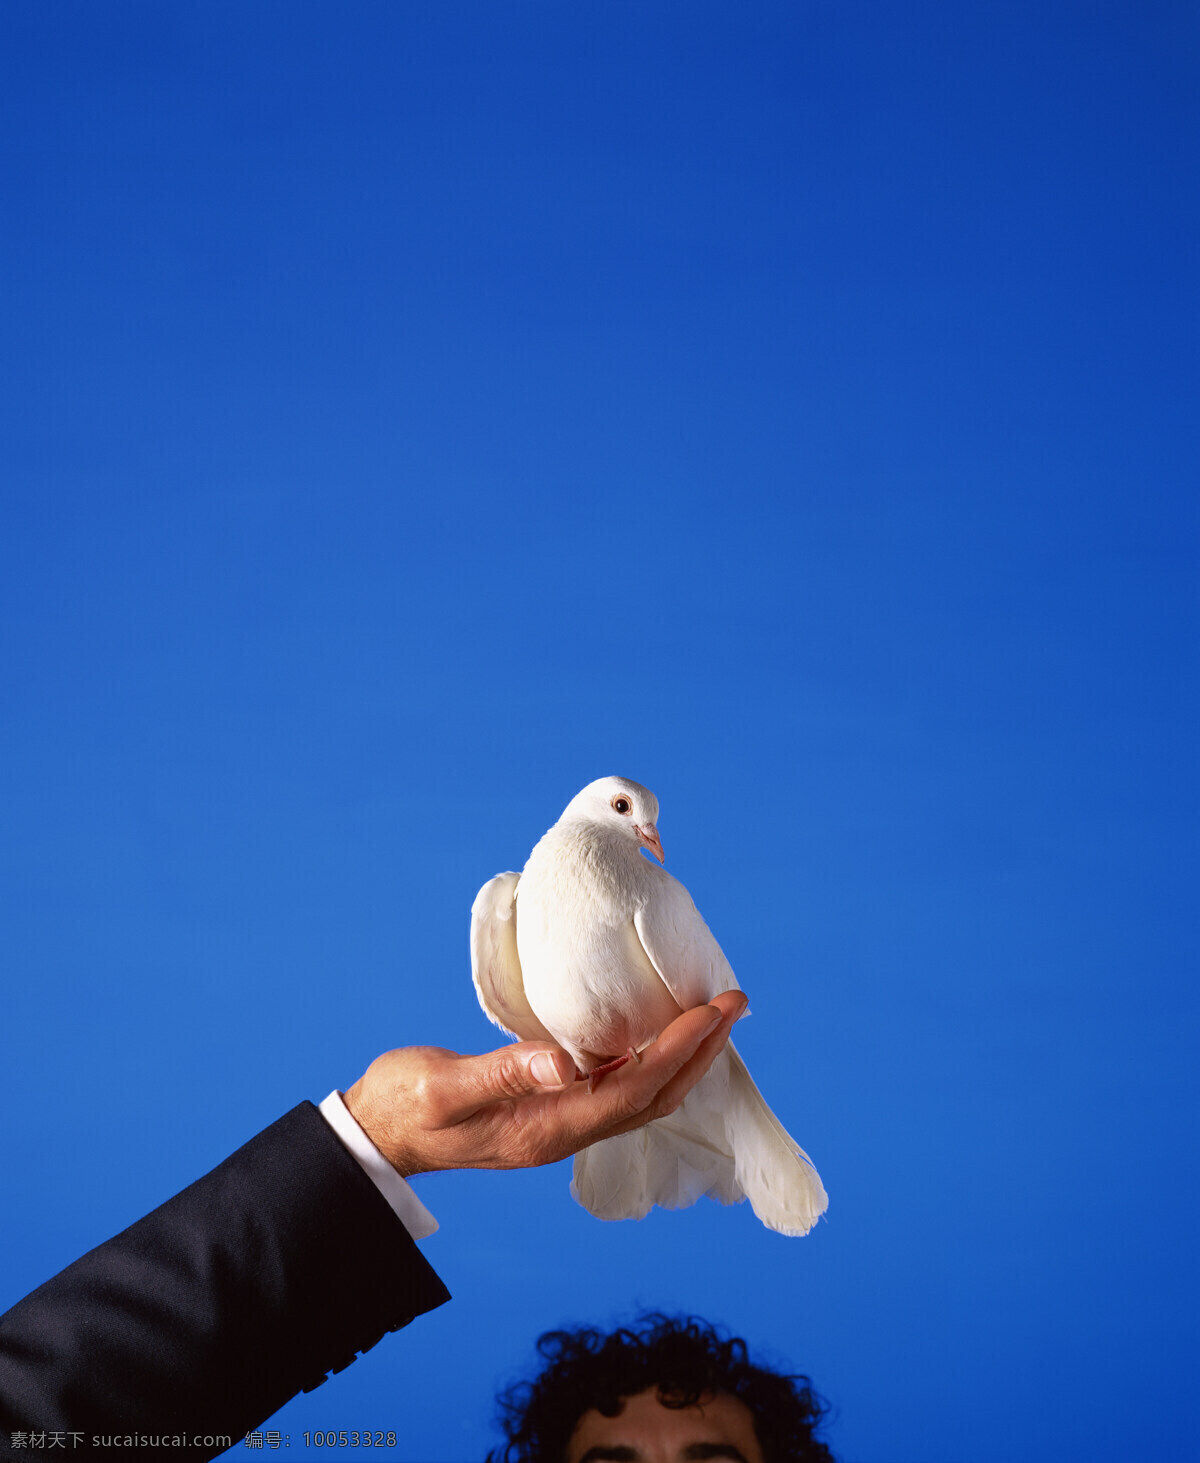 捧 在手 中 鸽子 动物 鸟禽 鸟类 和平鸽 和平 手 手心 空中飞鸟 生物世界